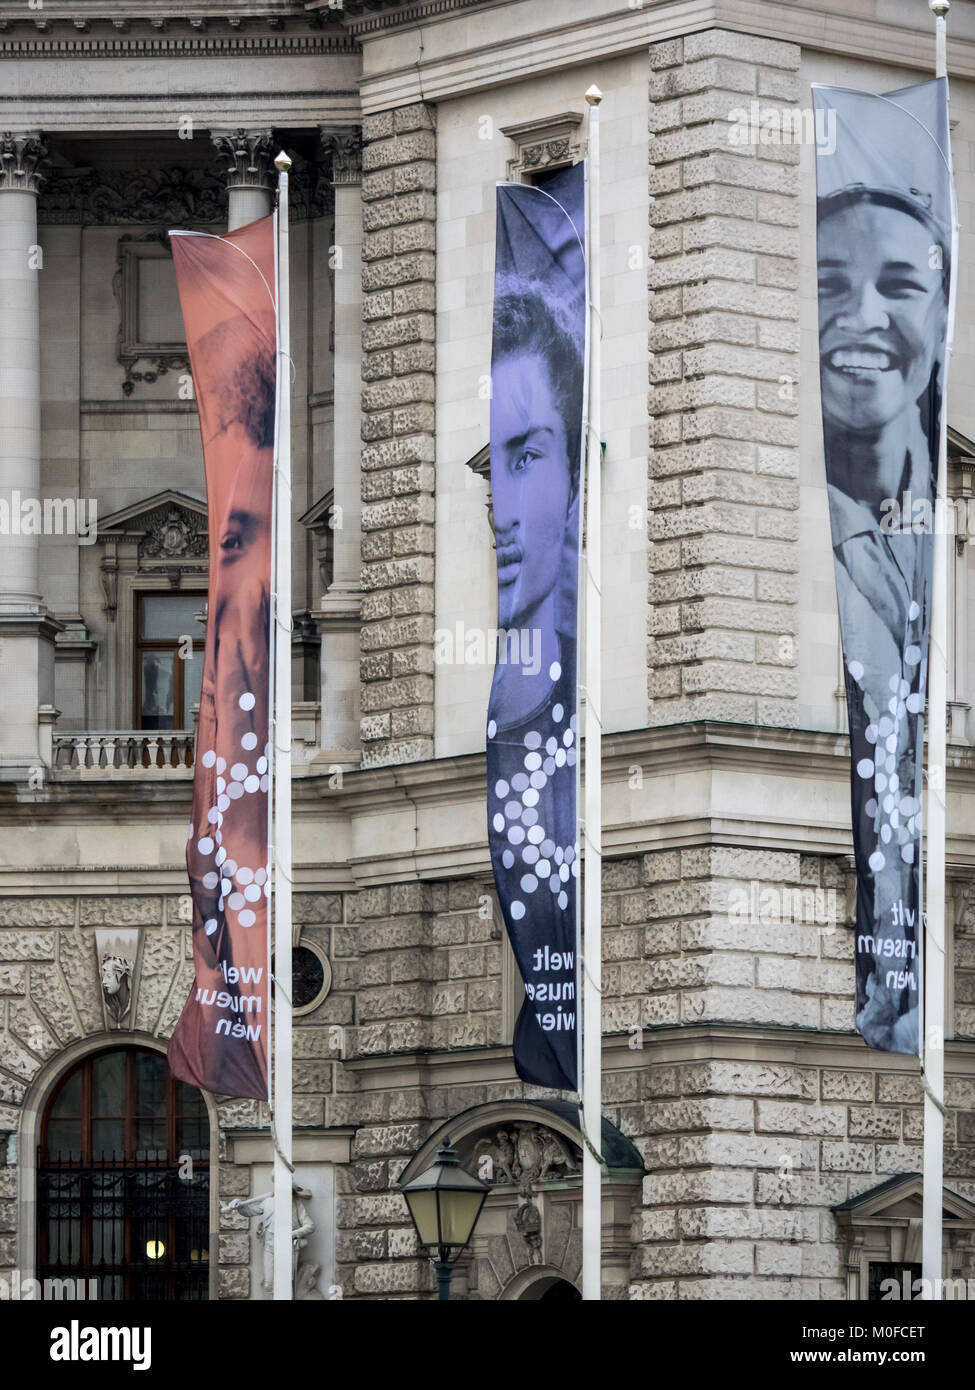 WIEN, ÖSTERREICH - 06. DEZEMBER 2017: Bannerschilder vor dem Weltmuseum Wien - ein Ethnologisches Museum Stockfoto